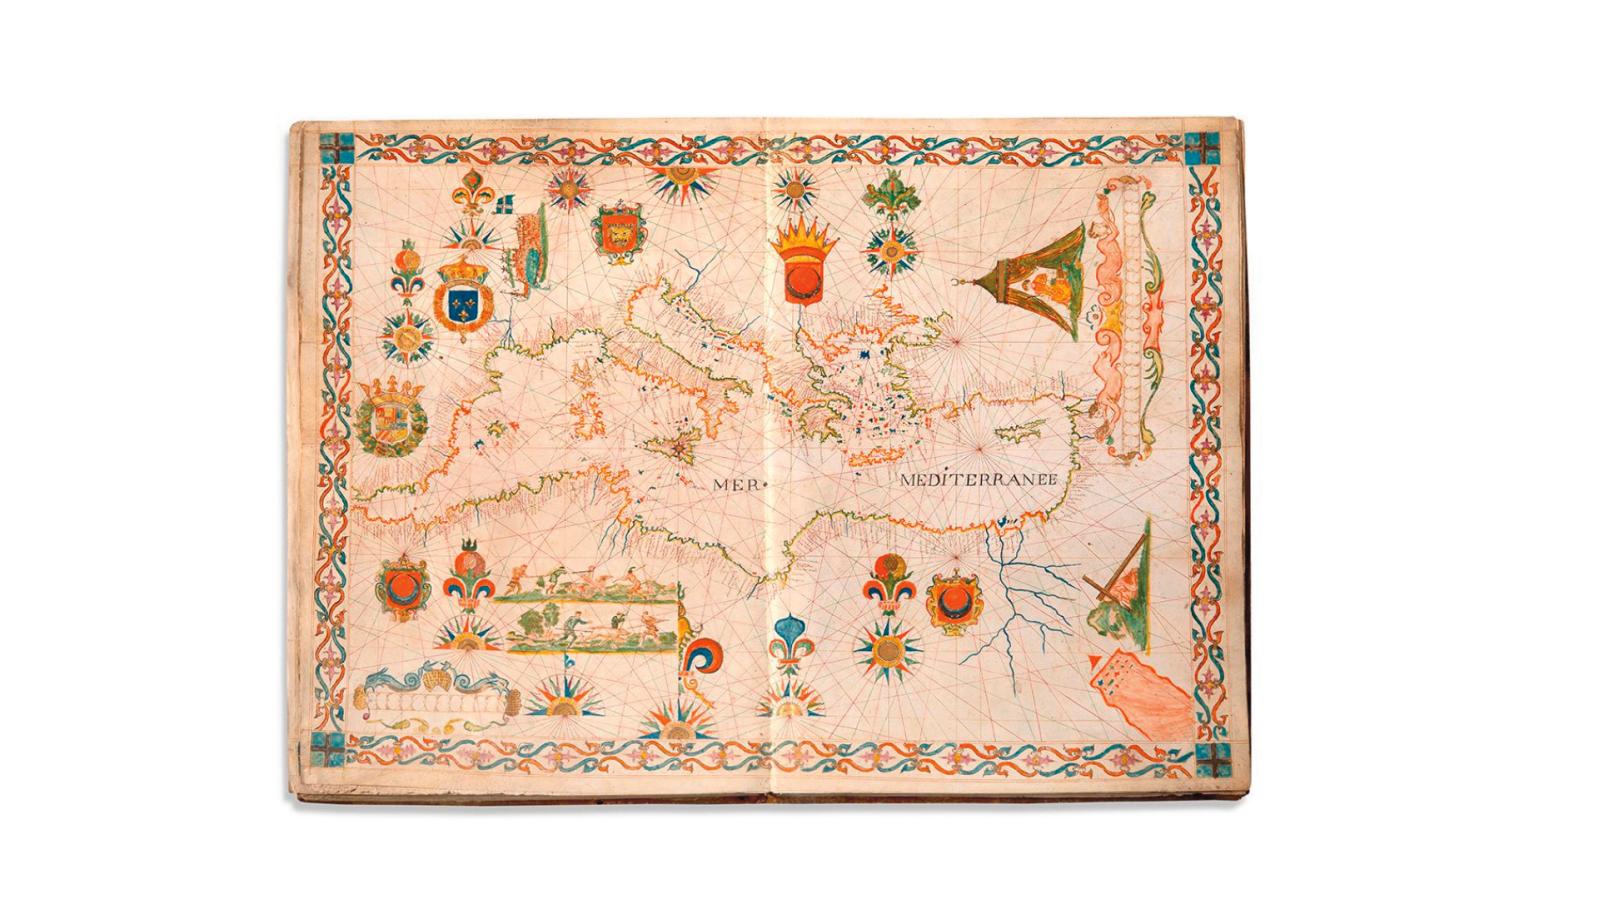 Honoré Boyer (actif au milieu du XVIIe siècle), atlas nautique manuscrit composé de huit cartes doubles dessinées à l’encre carbone, peint